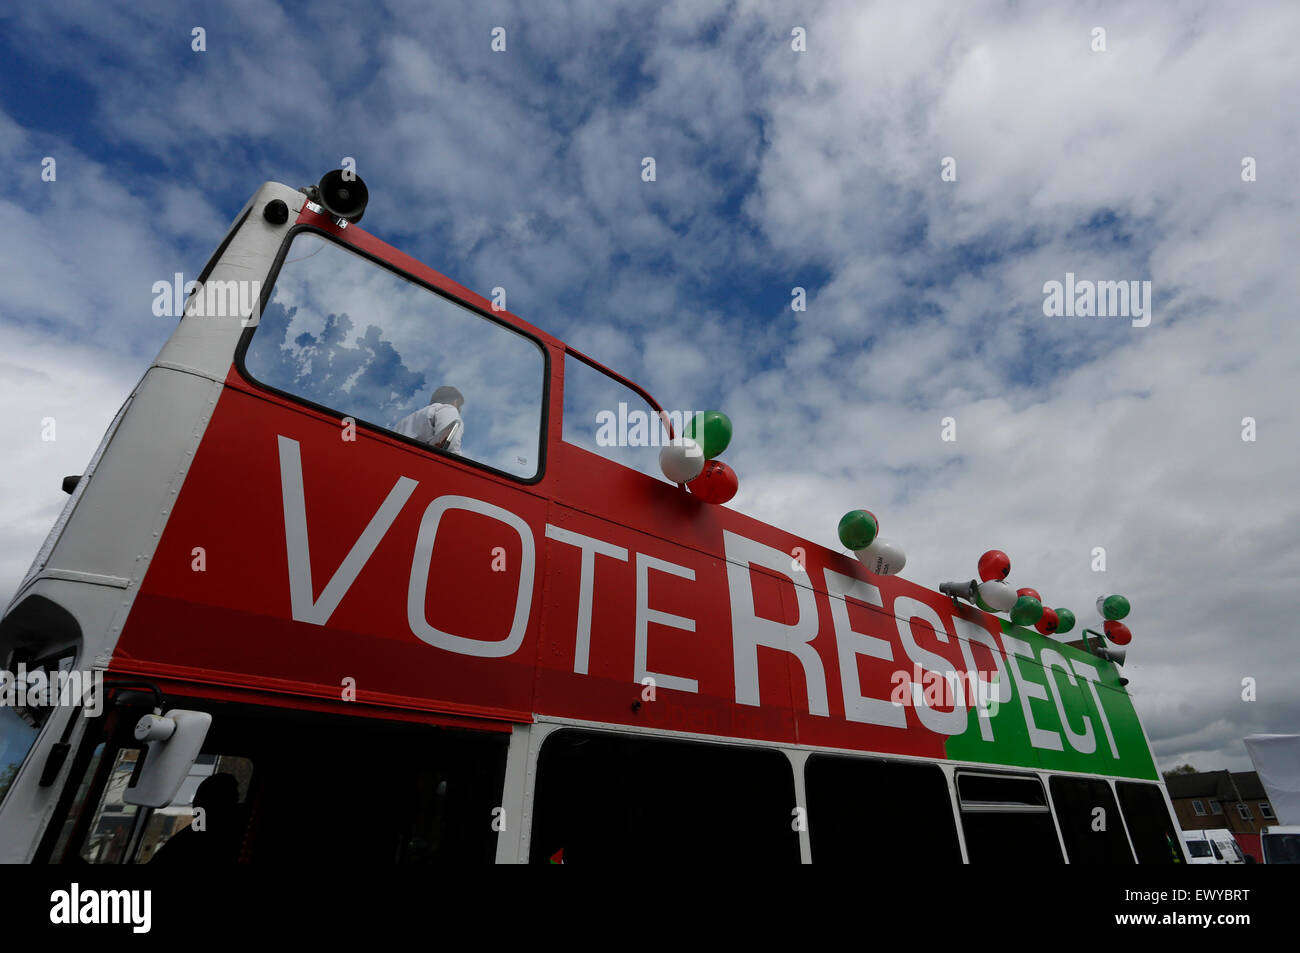 George Galloway's Respect Party bus, le jour de l'élection générale 2015. Banque D'Images